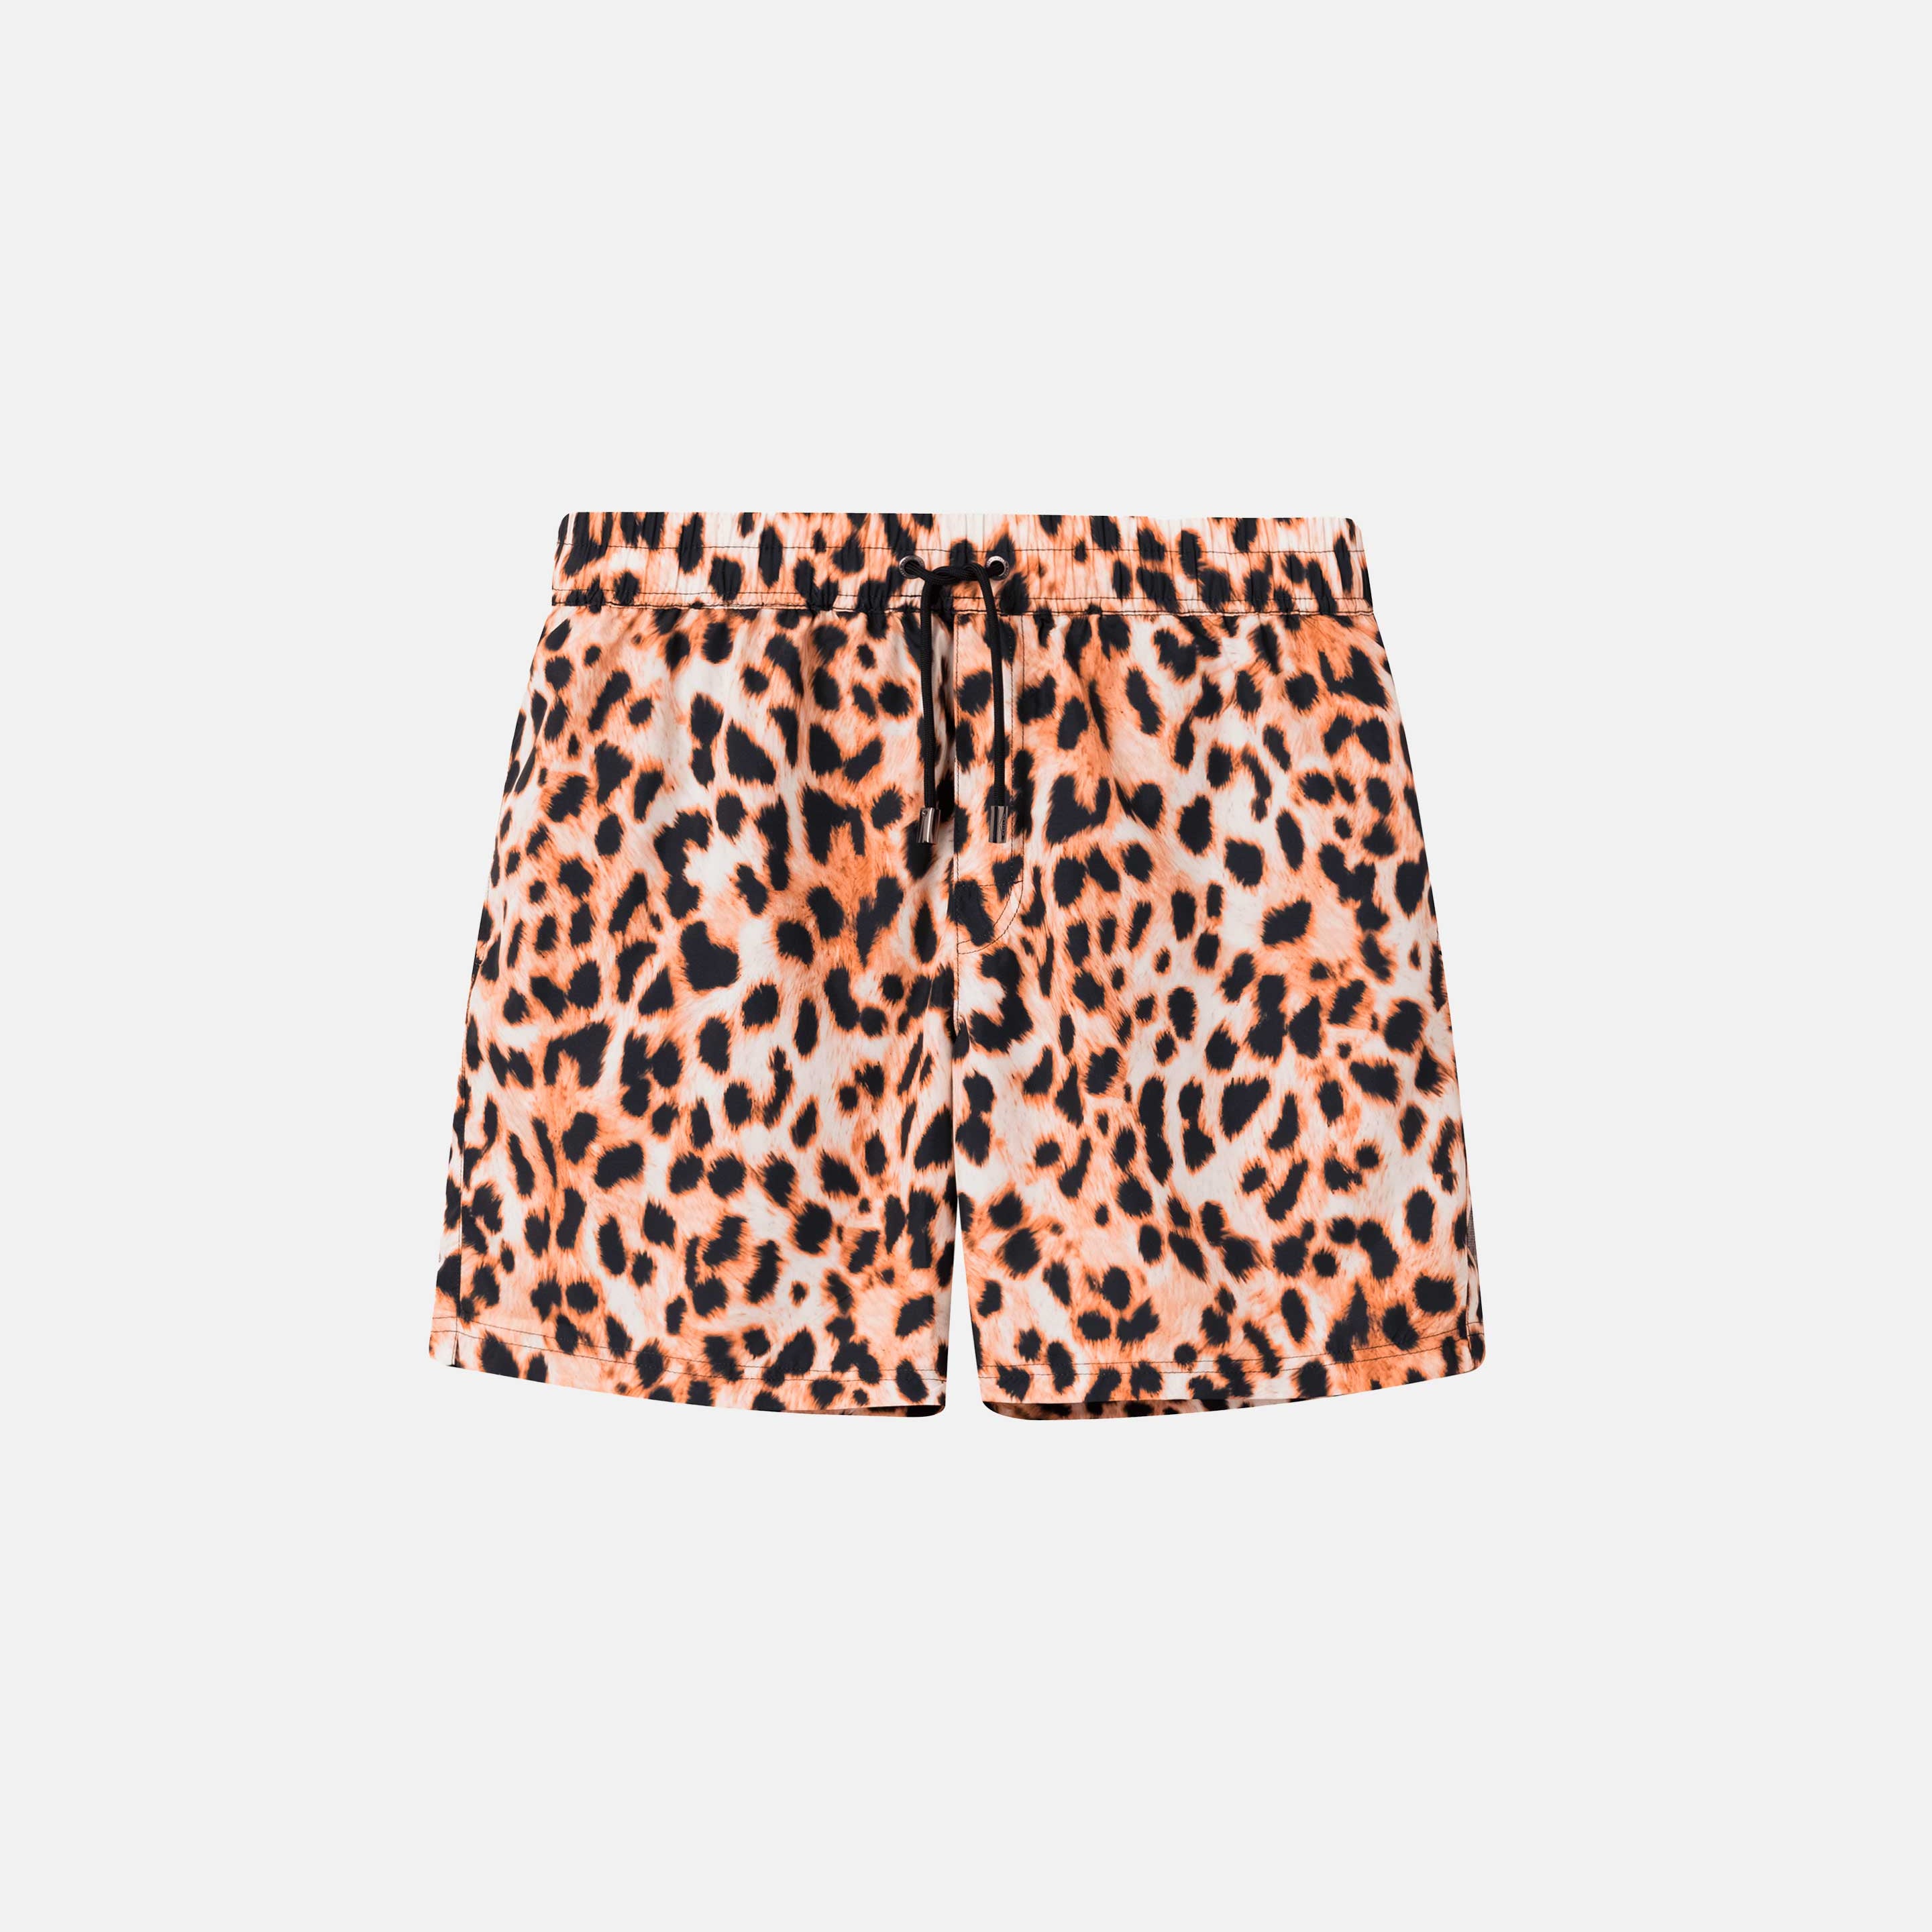 Leopard printed extended-length swim trunks